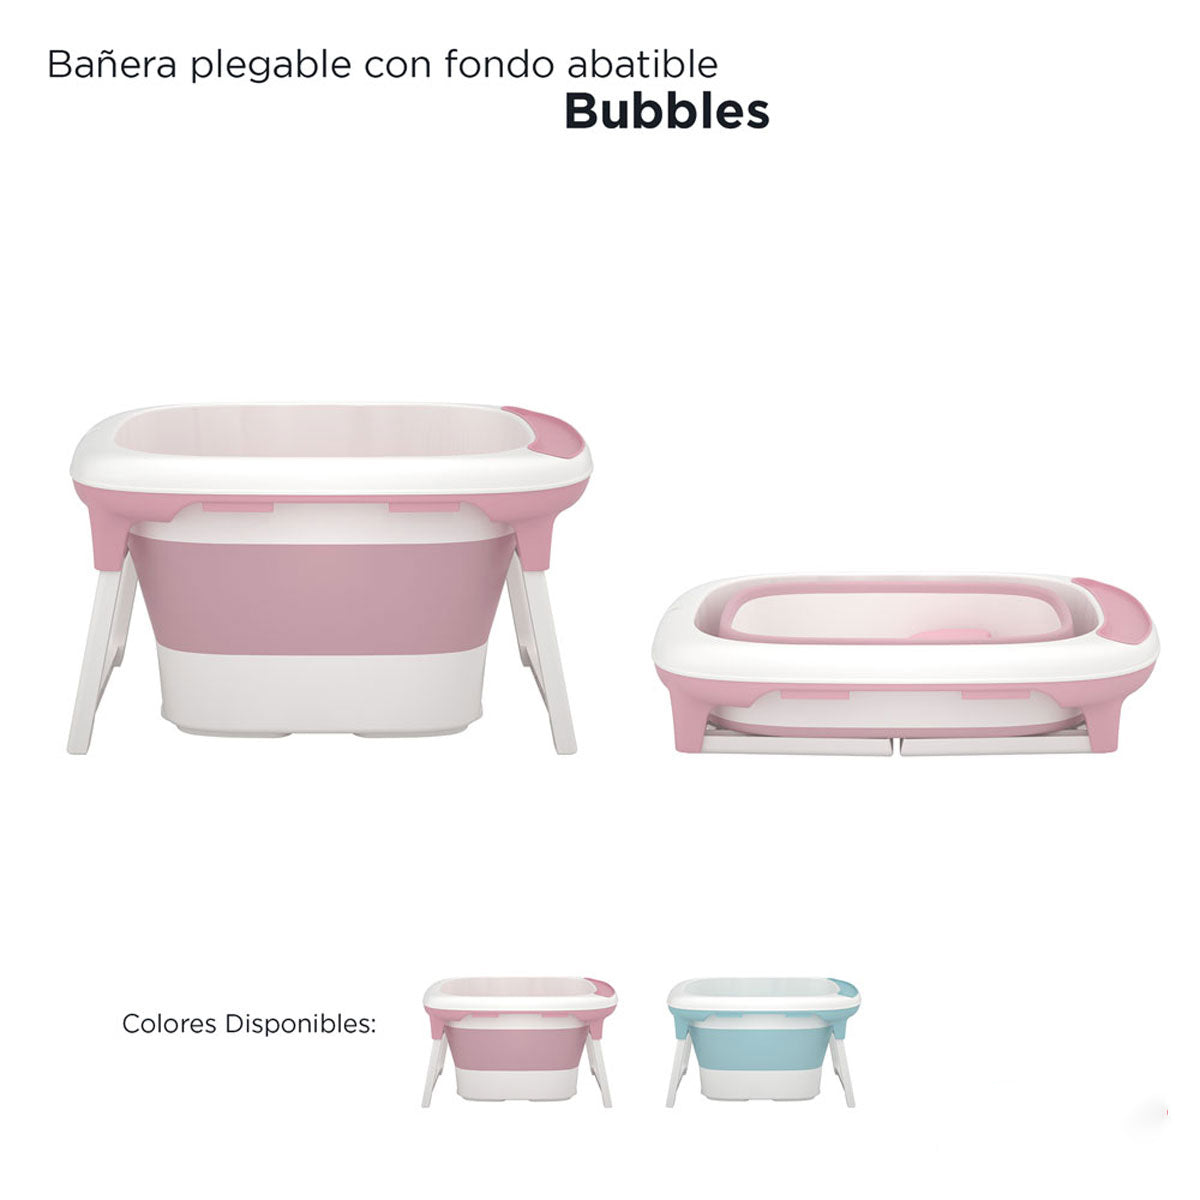 Bañera Pegable D'bebé Bubbles Unisex de 0 a 6 años